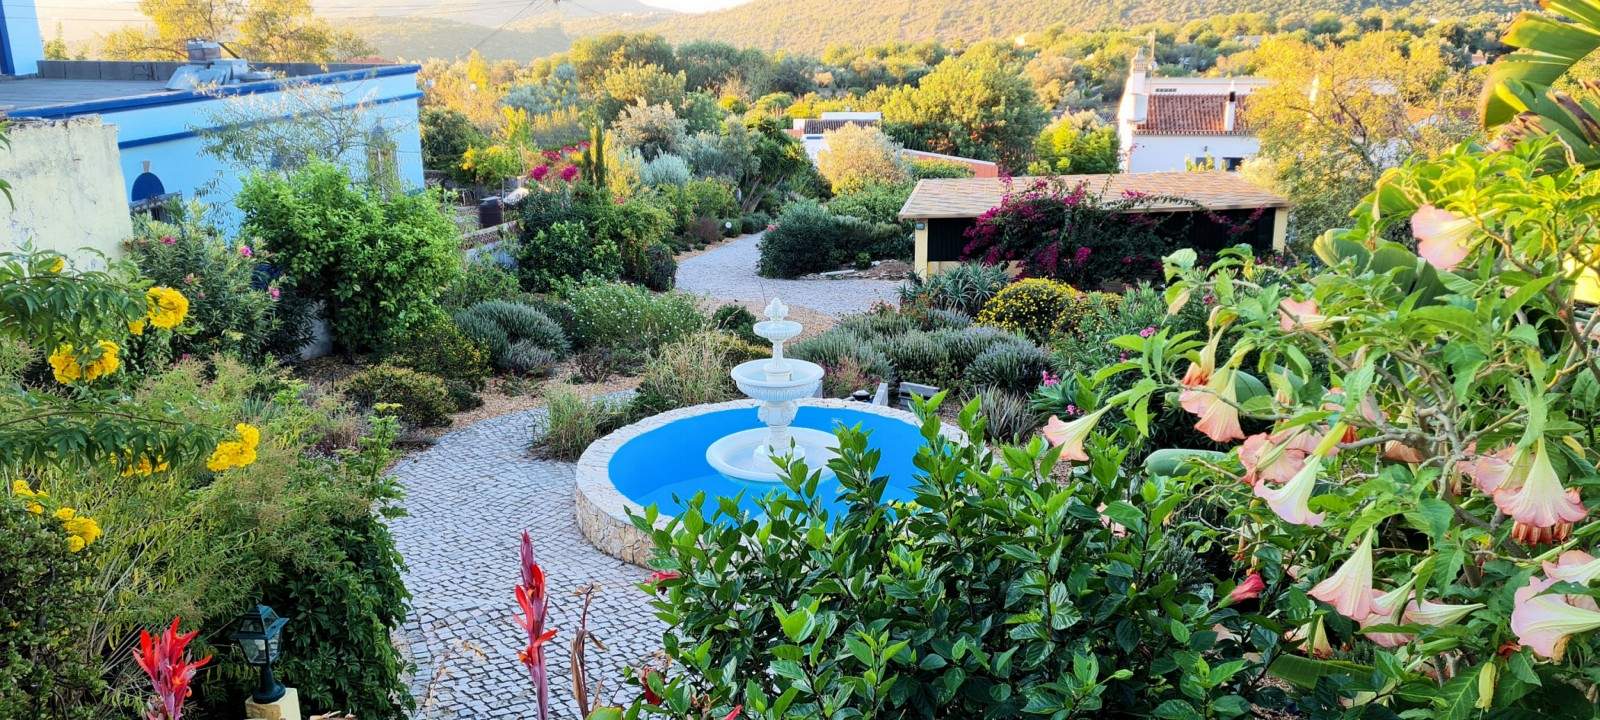 Moradia T2 com jardim, para venda, em São Brás de Alportel, Algarve_203375